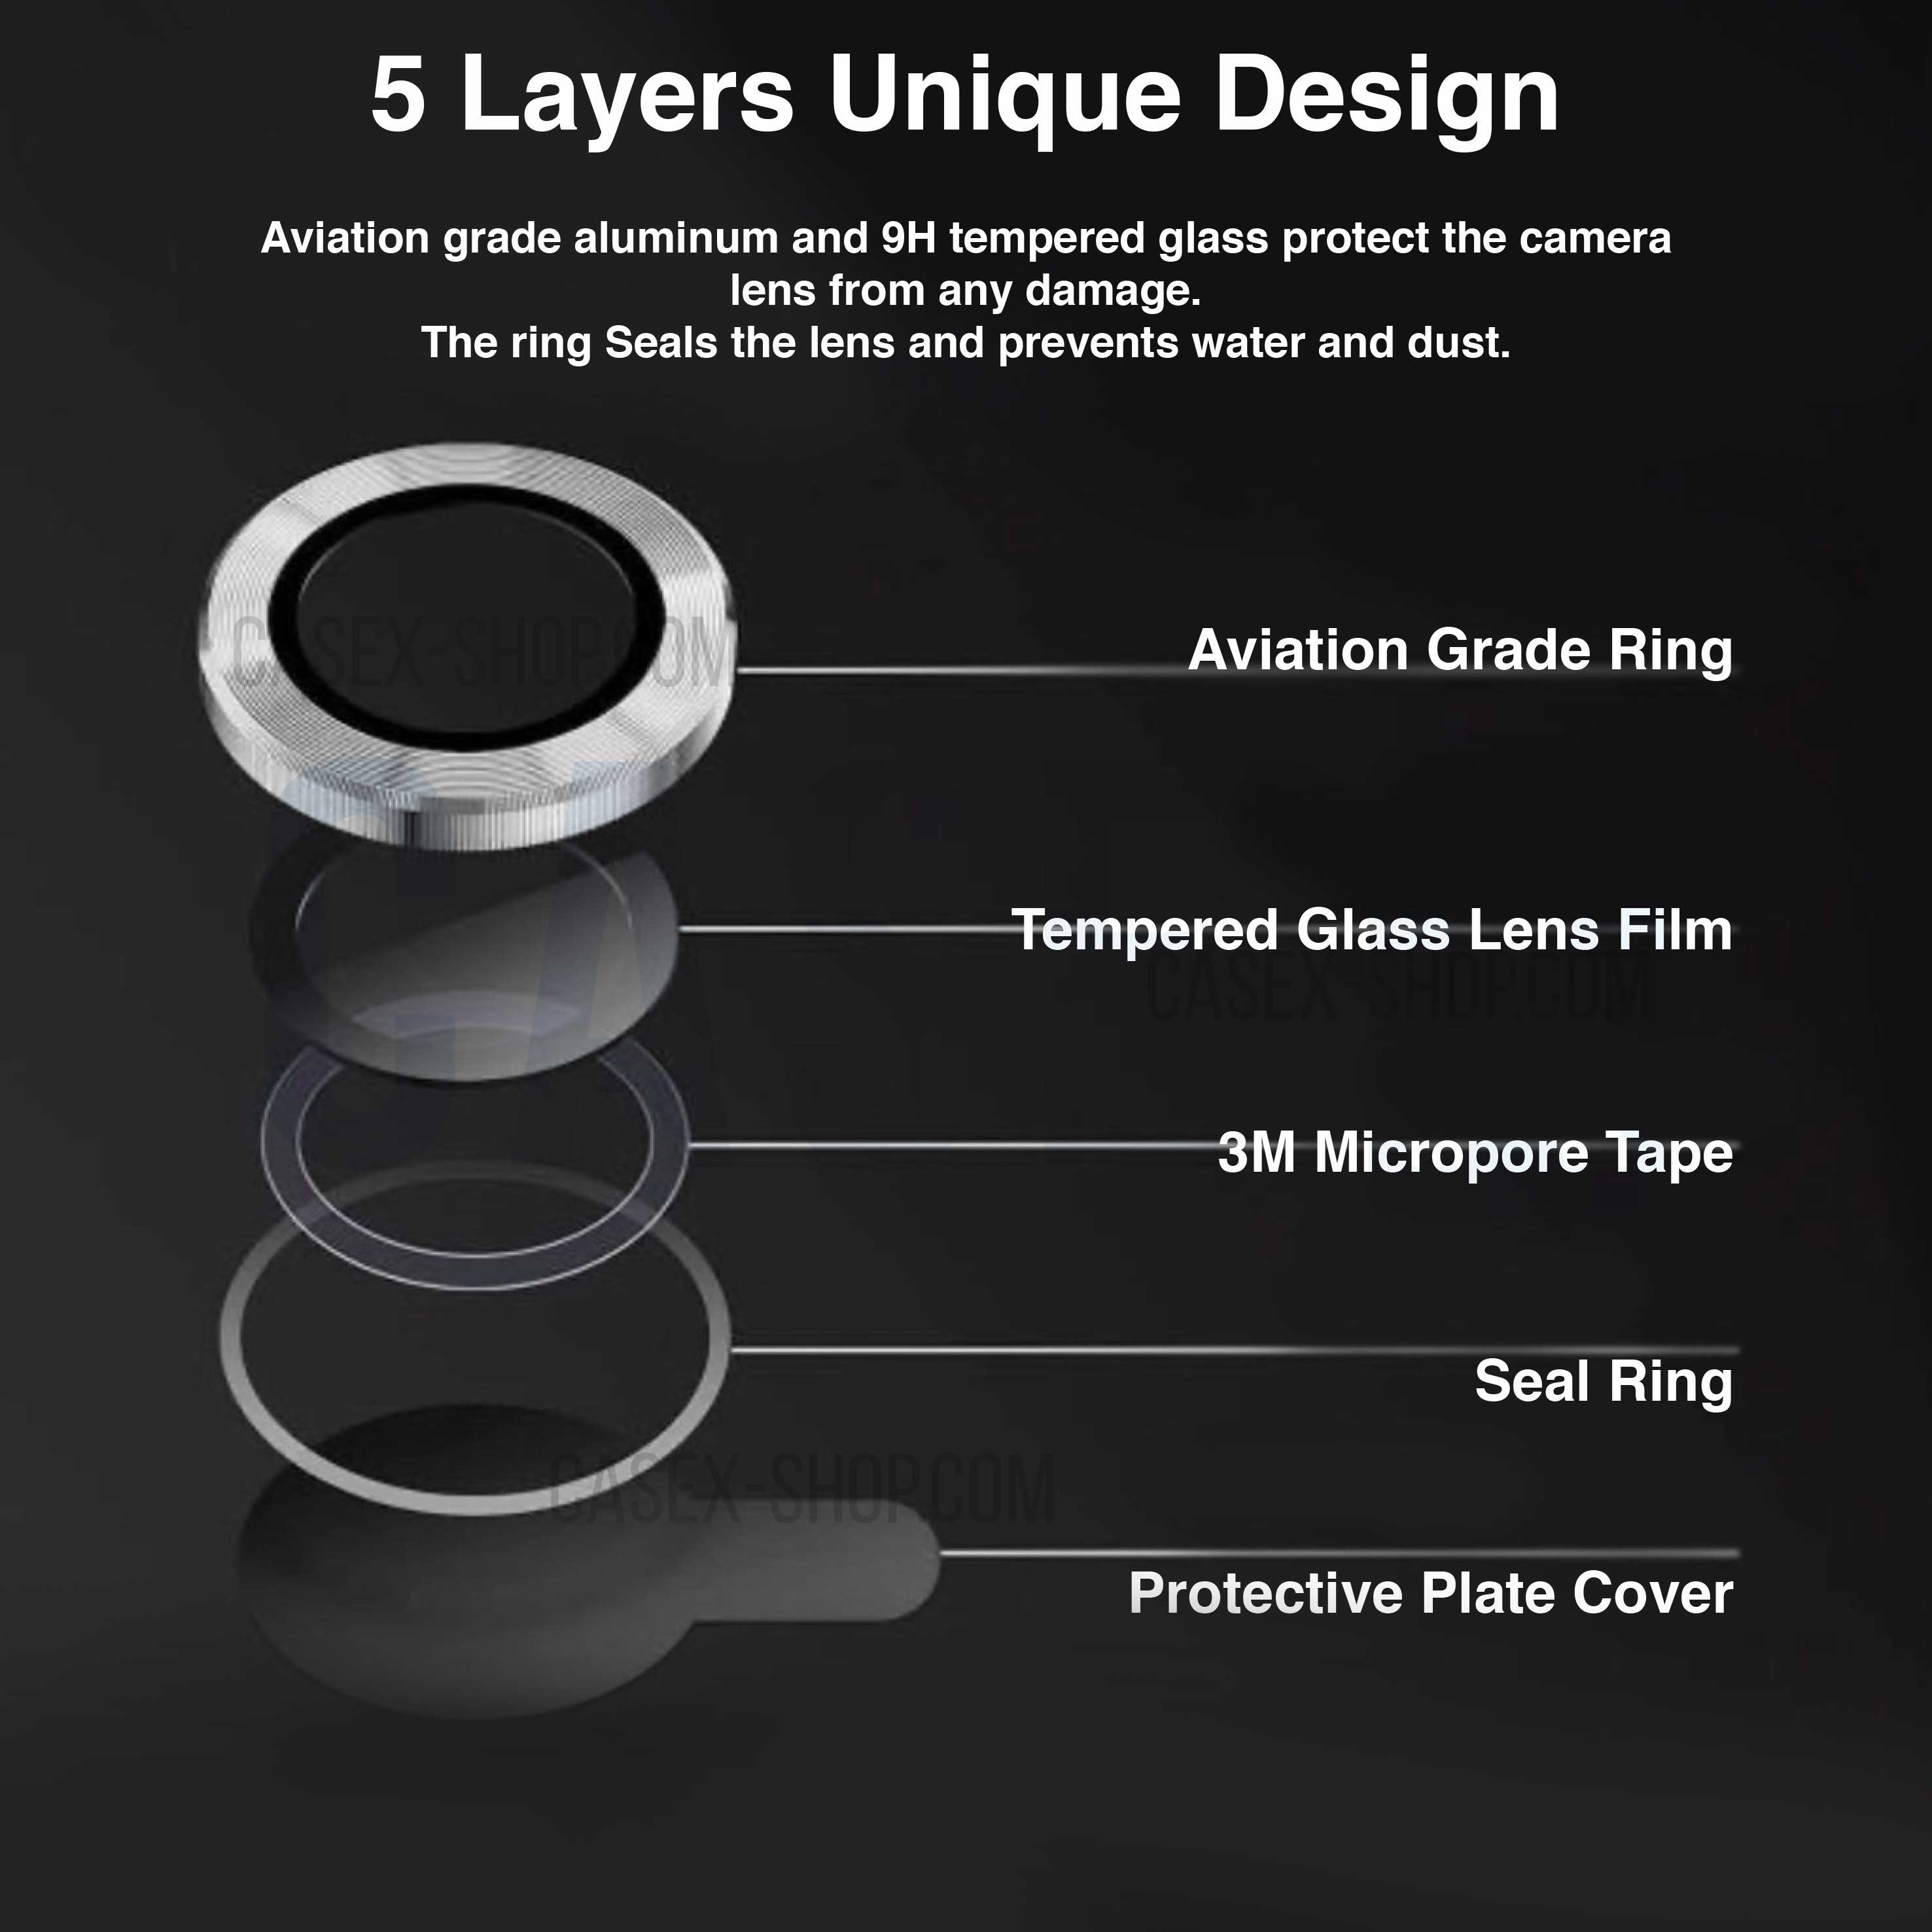 Black Titanium Ring Lens Protector